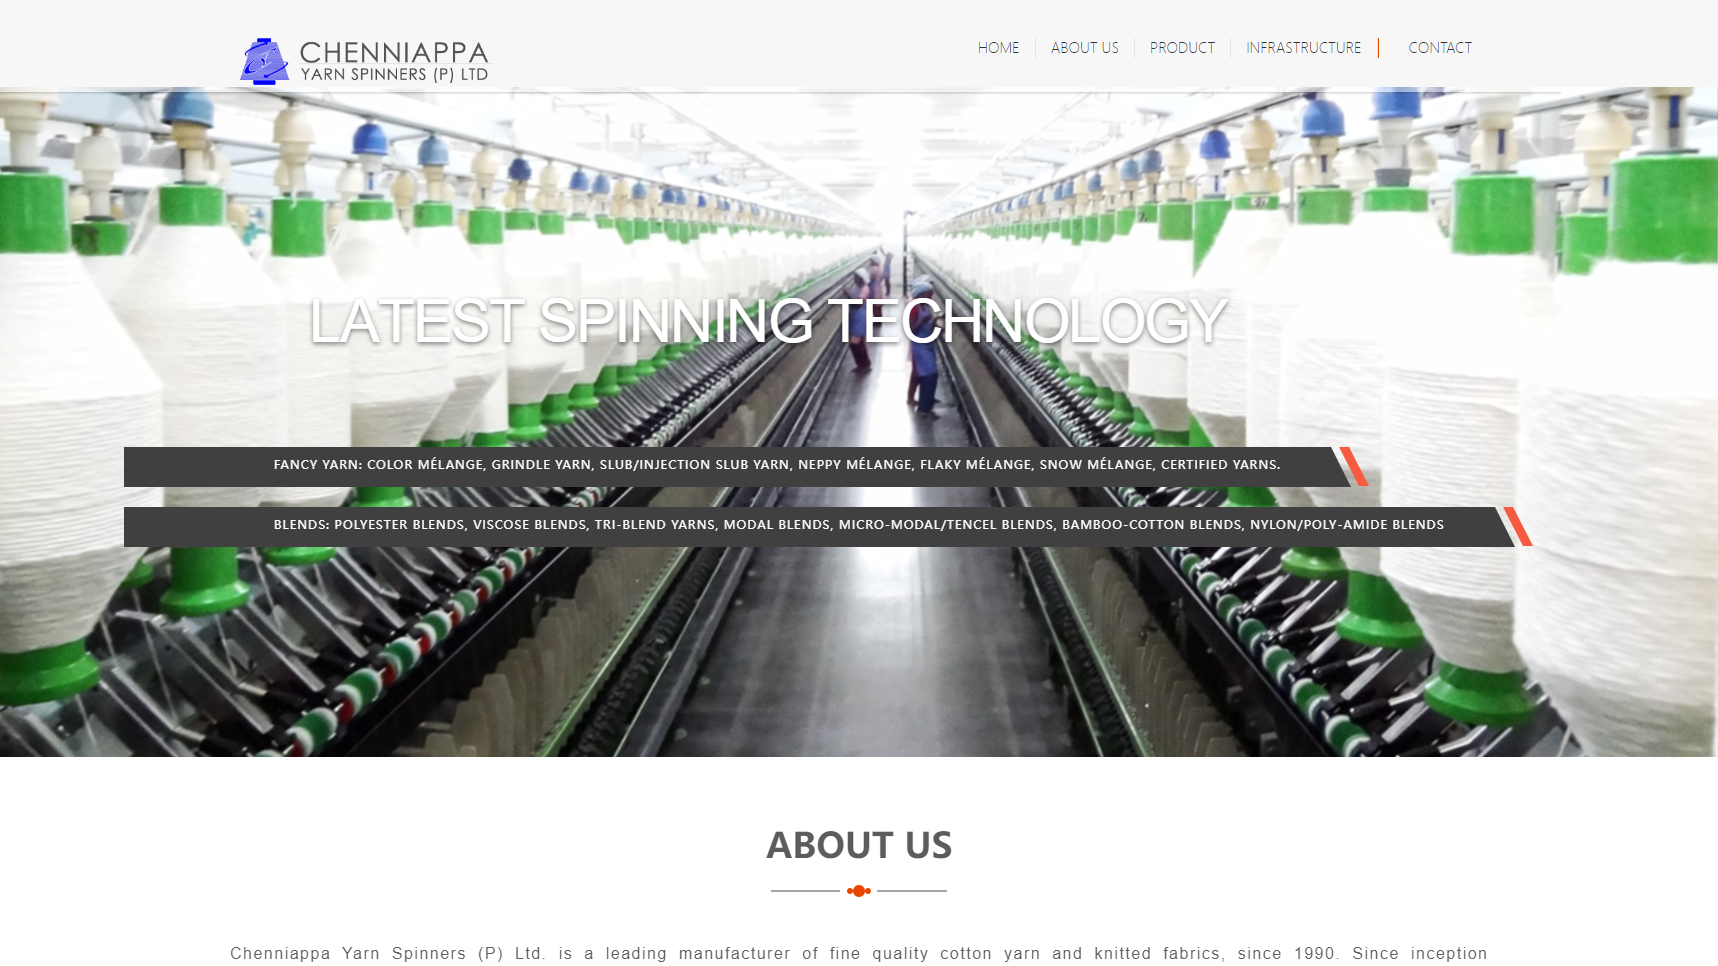 Chenniappa Yarn Spinners P. Ltd - Cotton Yarn Manufacturer